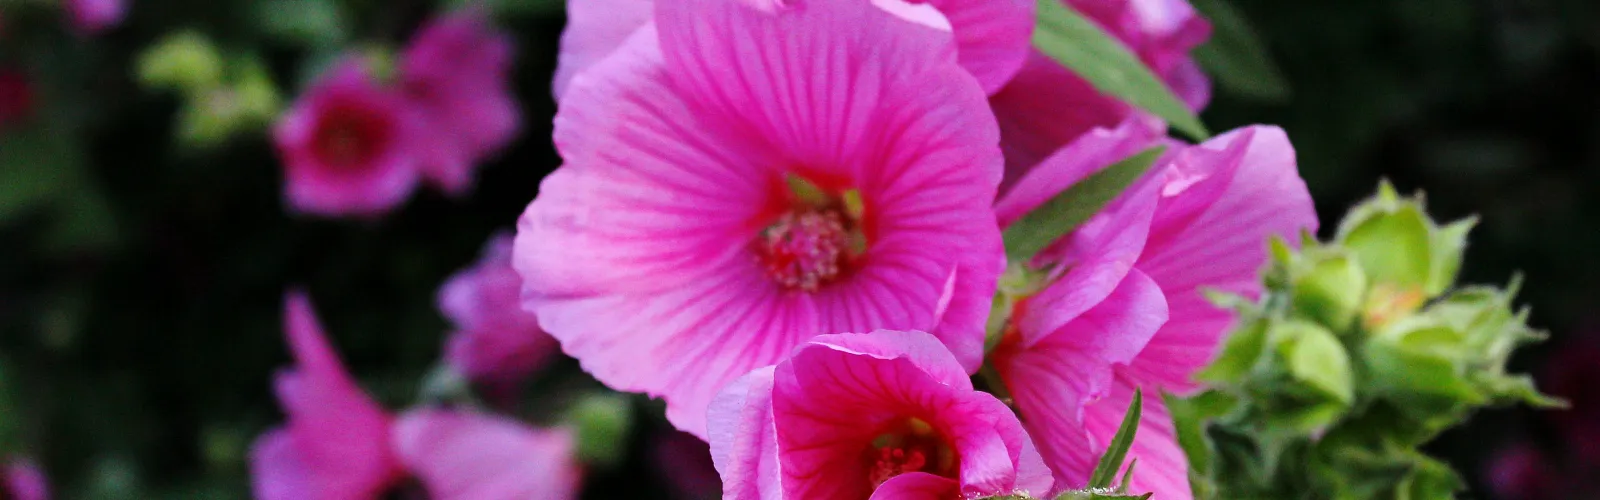 a close up of pink petunia